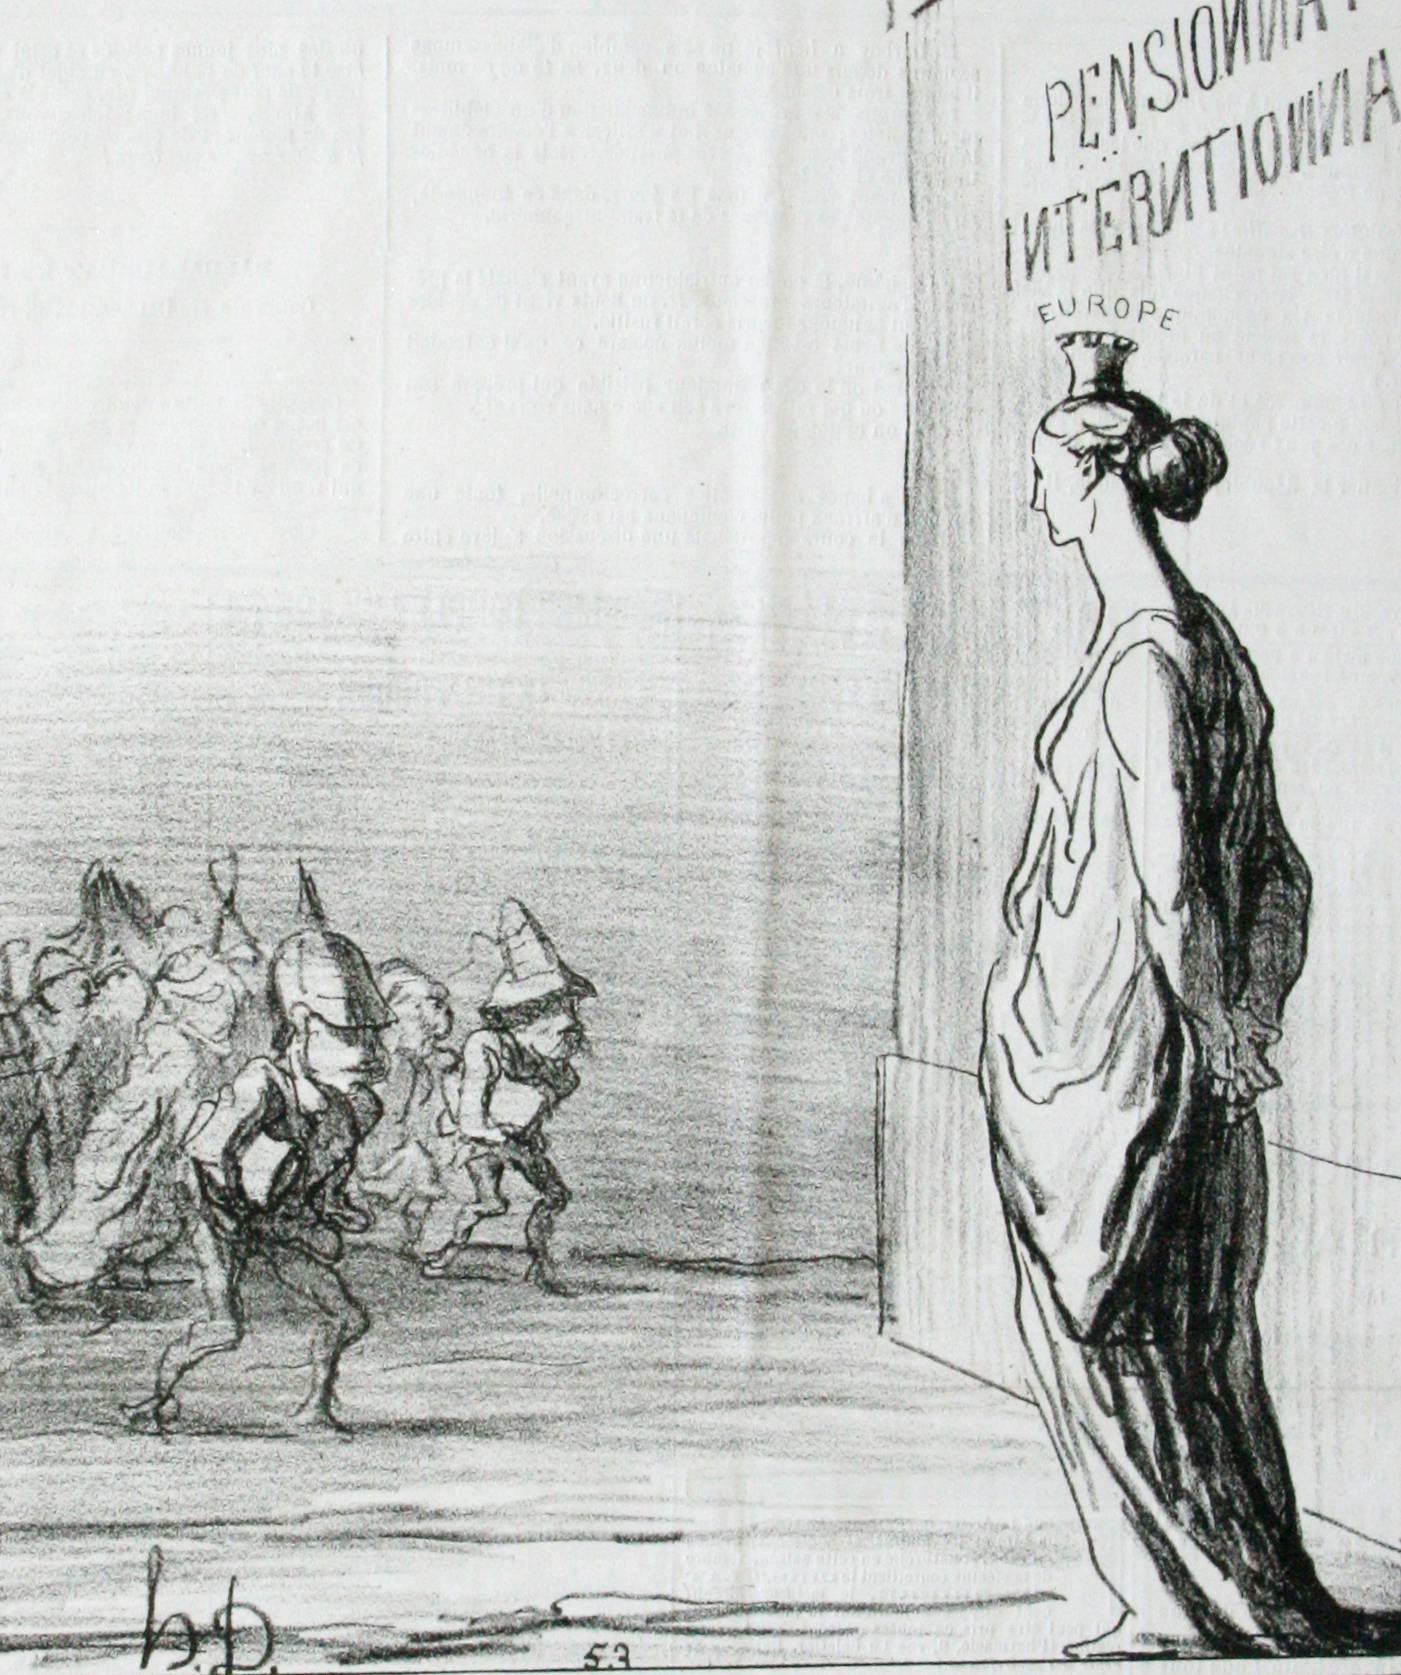 Honoré Daumier Portrait Print - The return